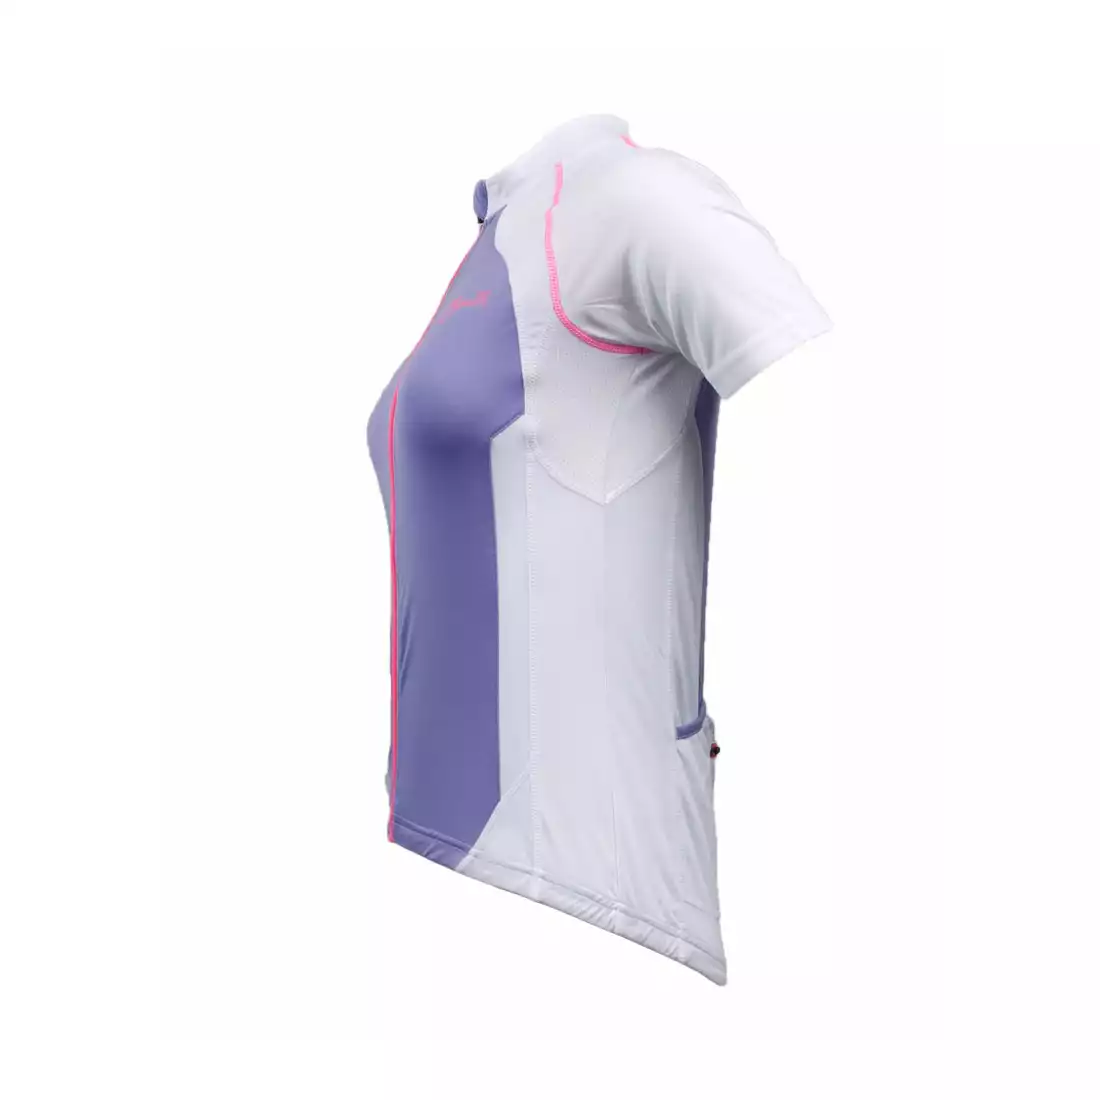 ROGELLI BICE - damska koszulka rowerowa, fioletowo-biała